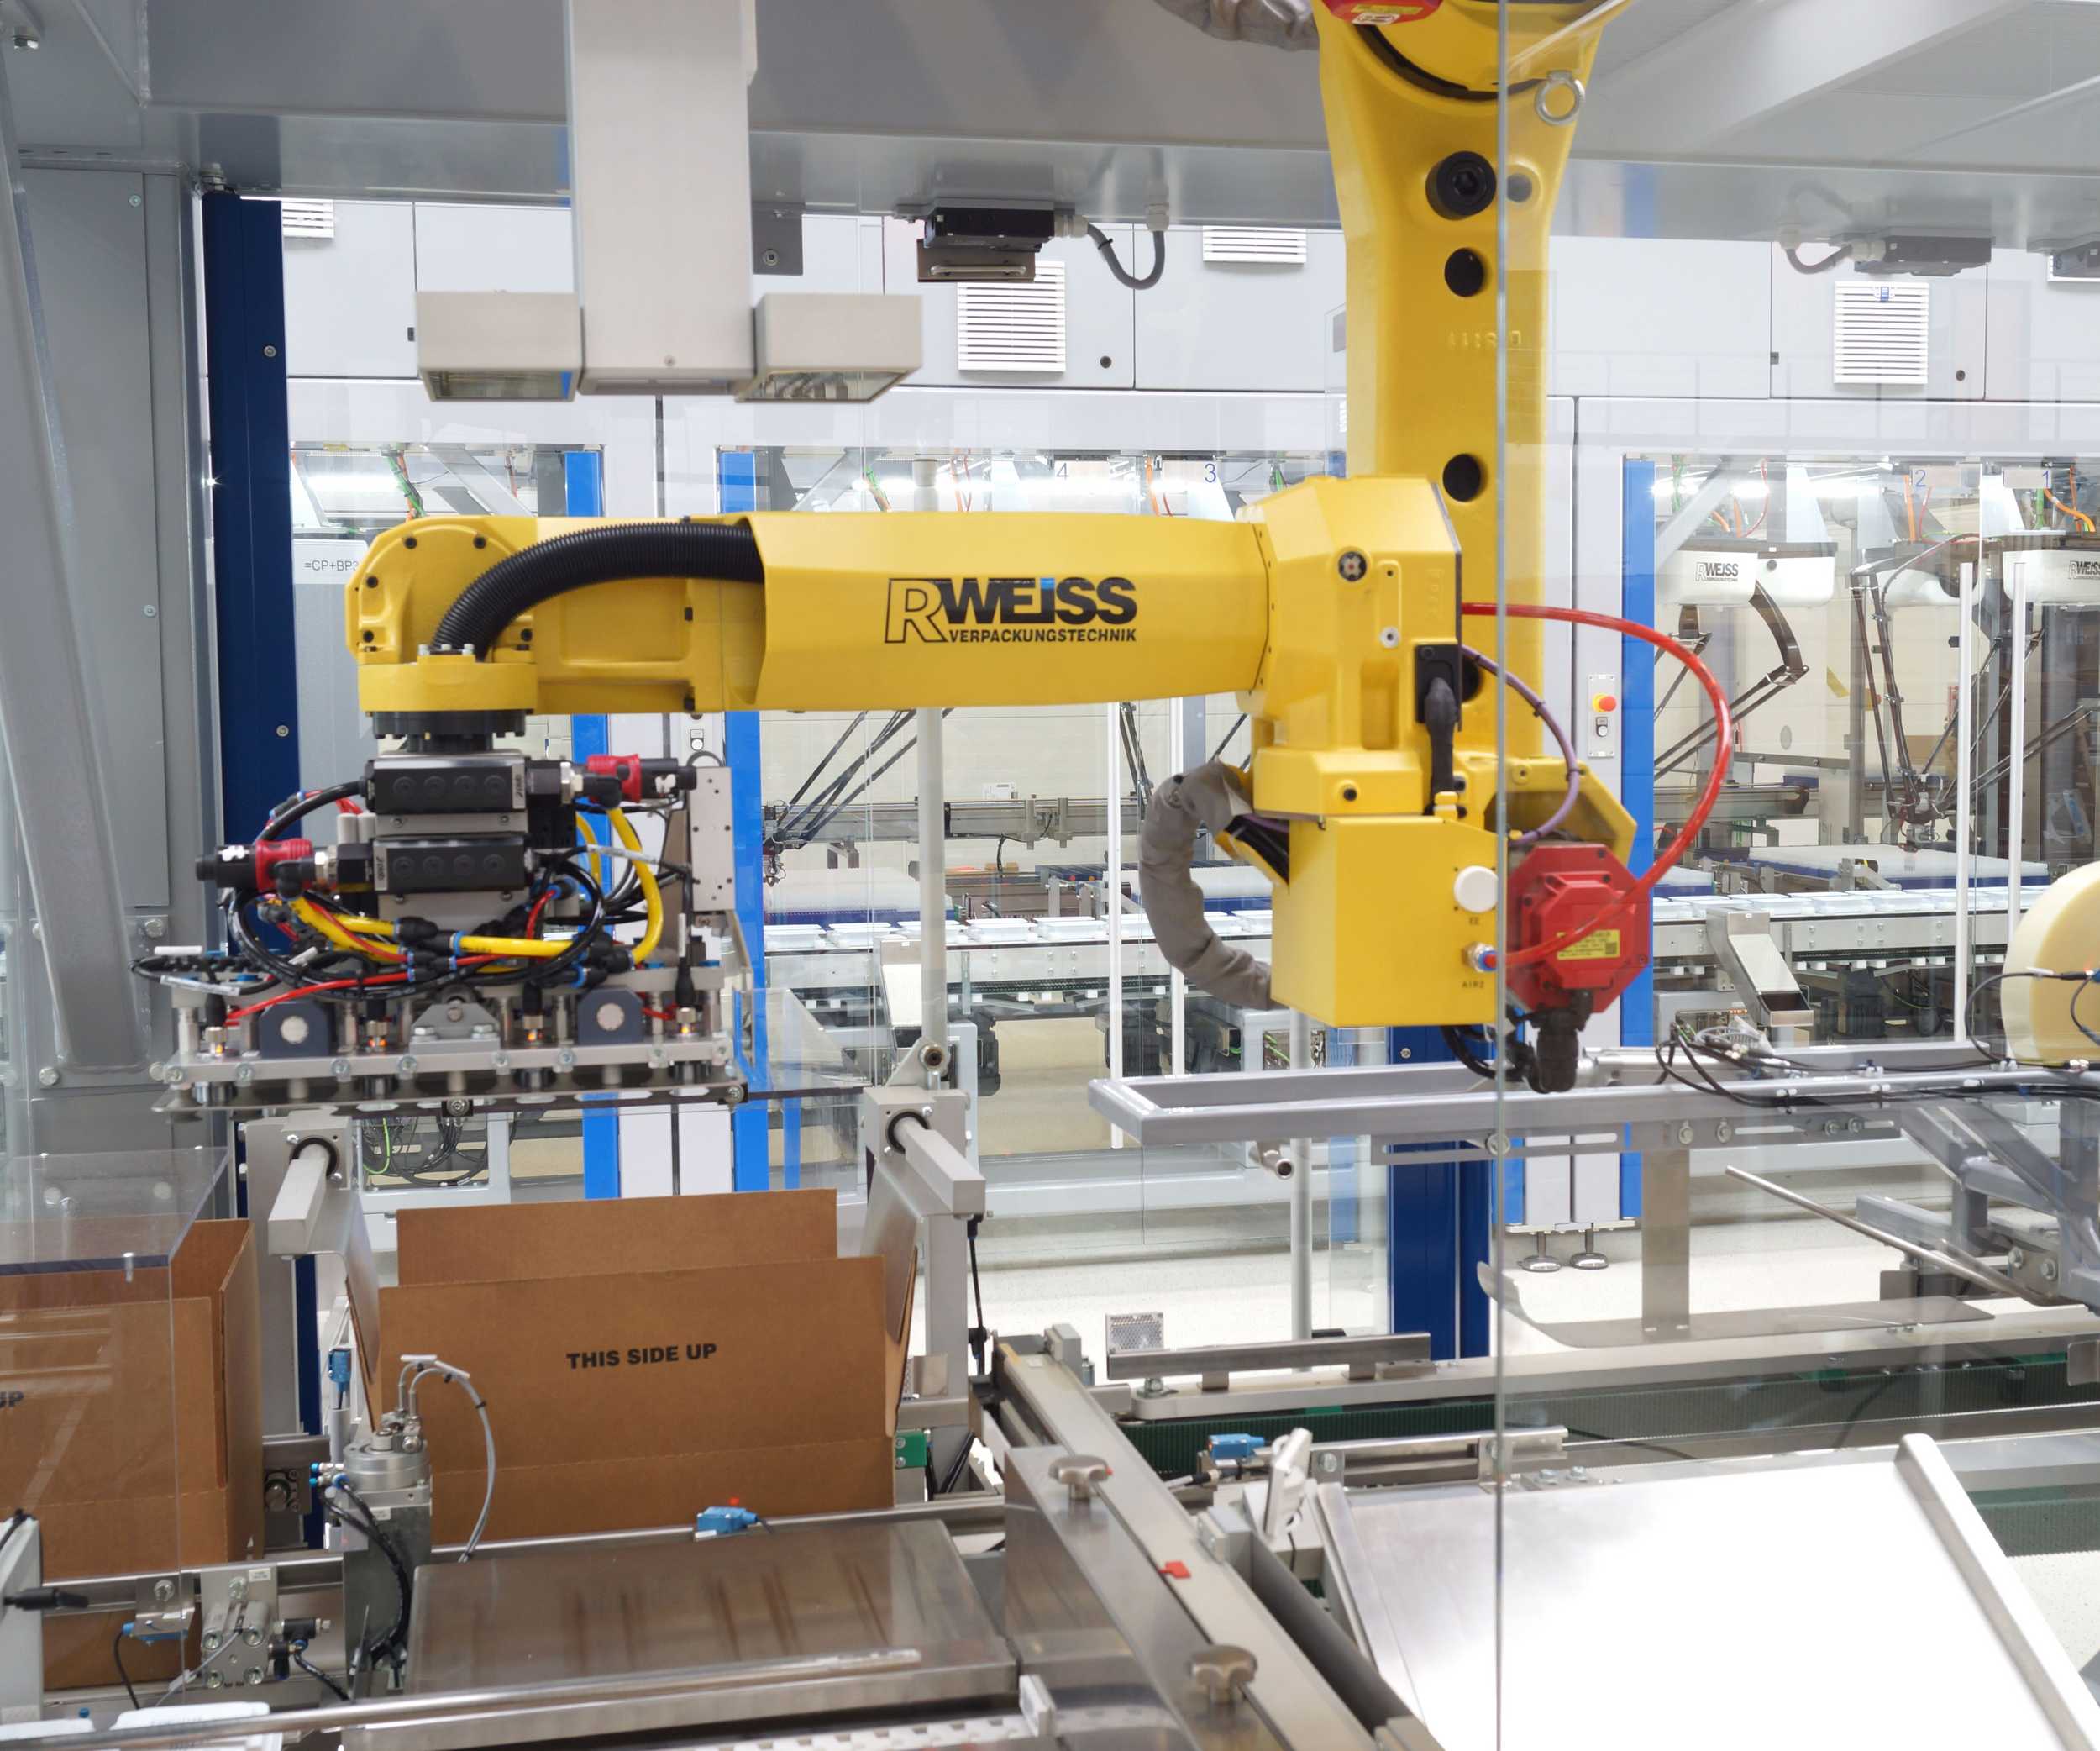 R.WEISS UNIROB Sammelpacker Roboter